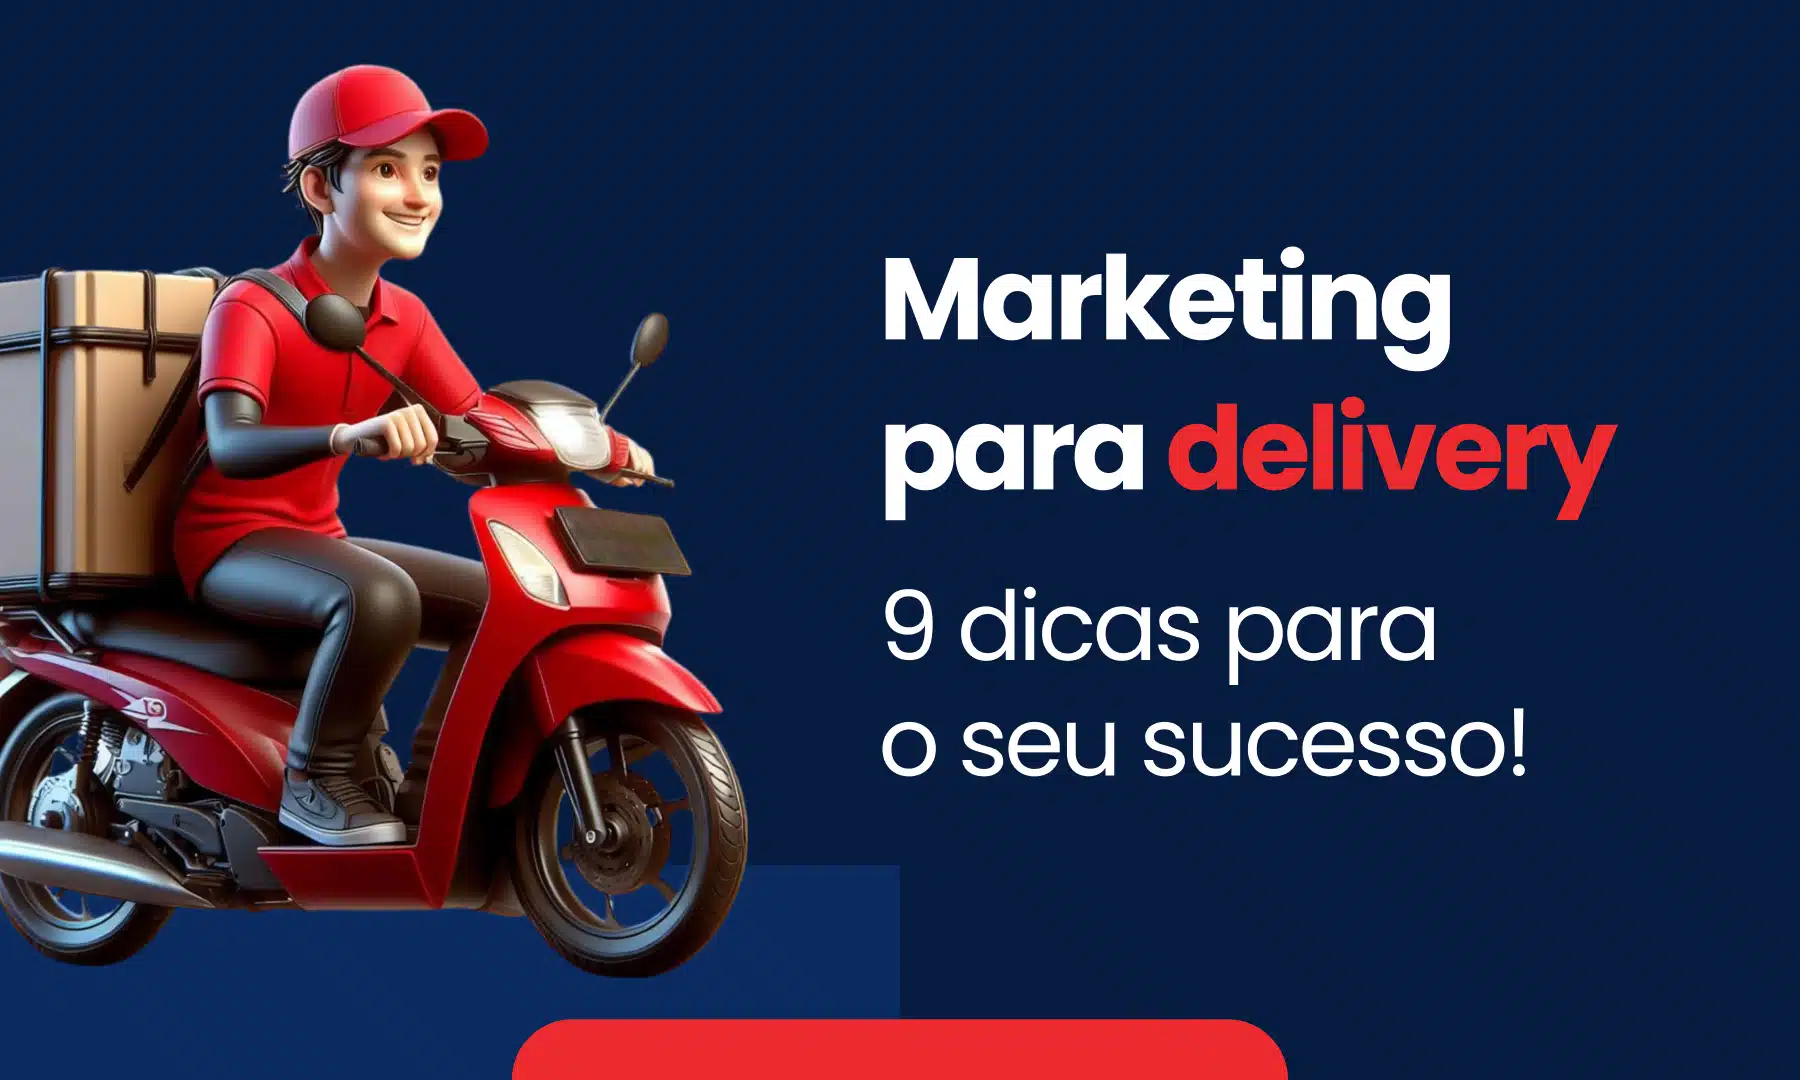 Marketing para delivery 9 dicas para o seu sucesso